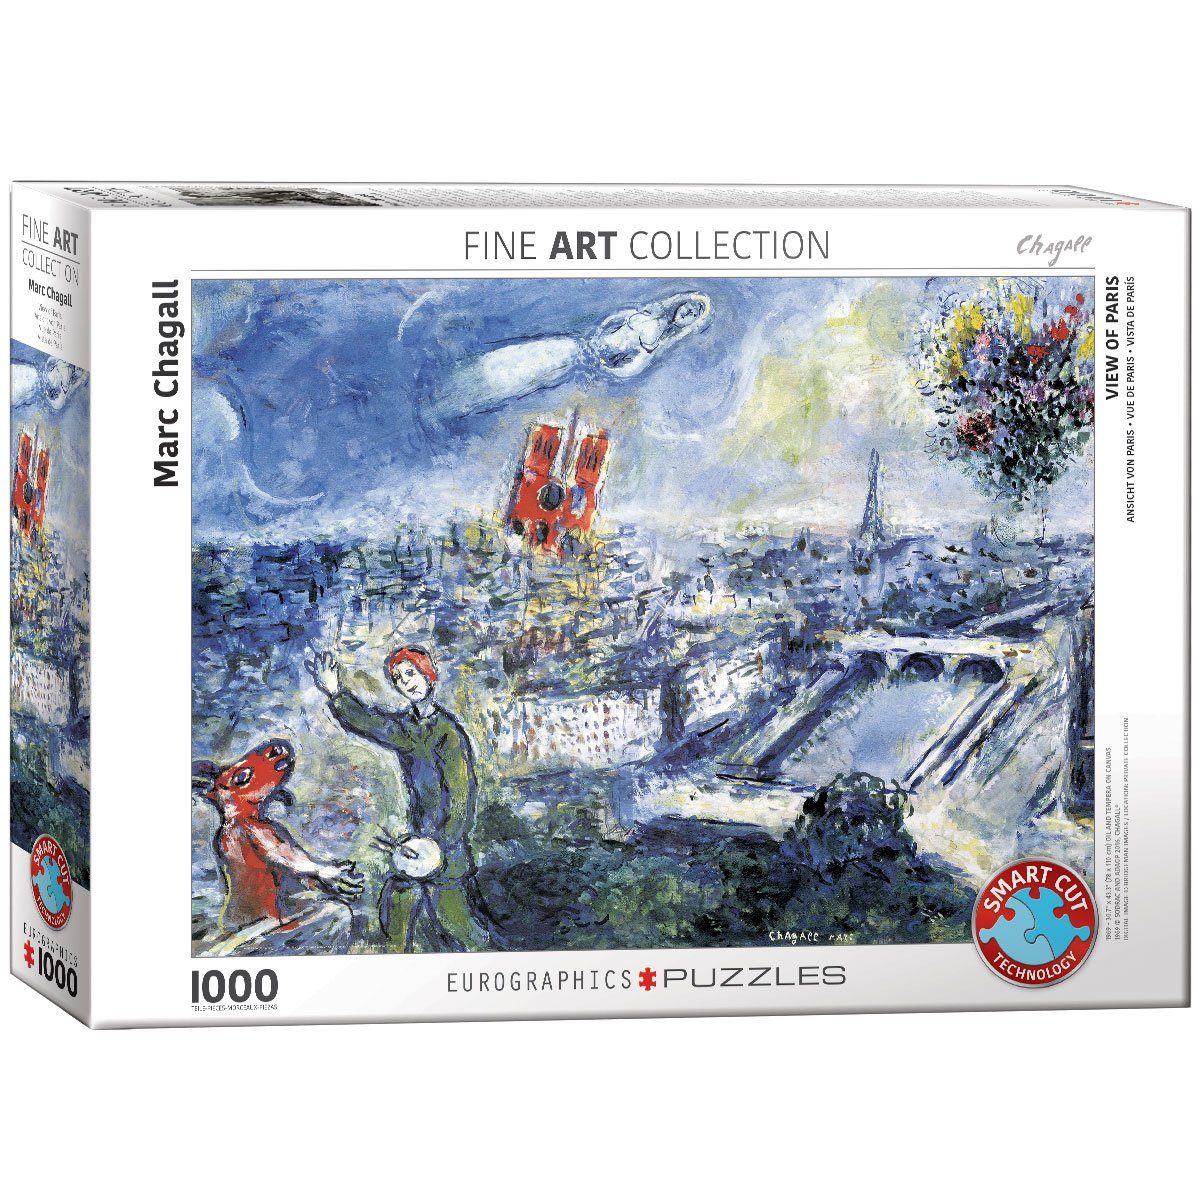 Marc Ansicht Puzzle EUROGRAPHICS Puzzleteile 1000 von Paris Chagall, von